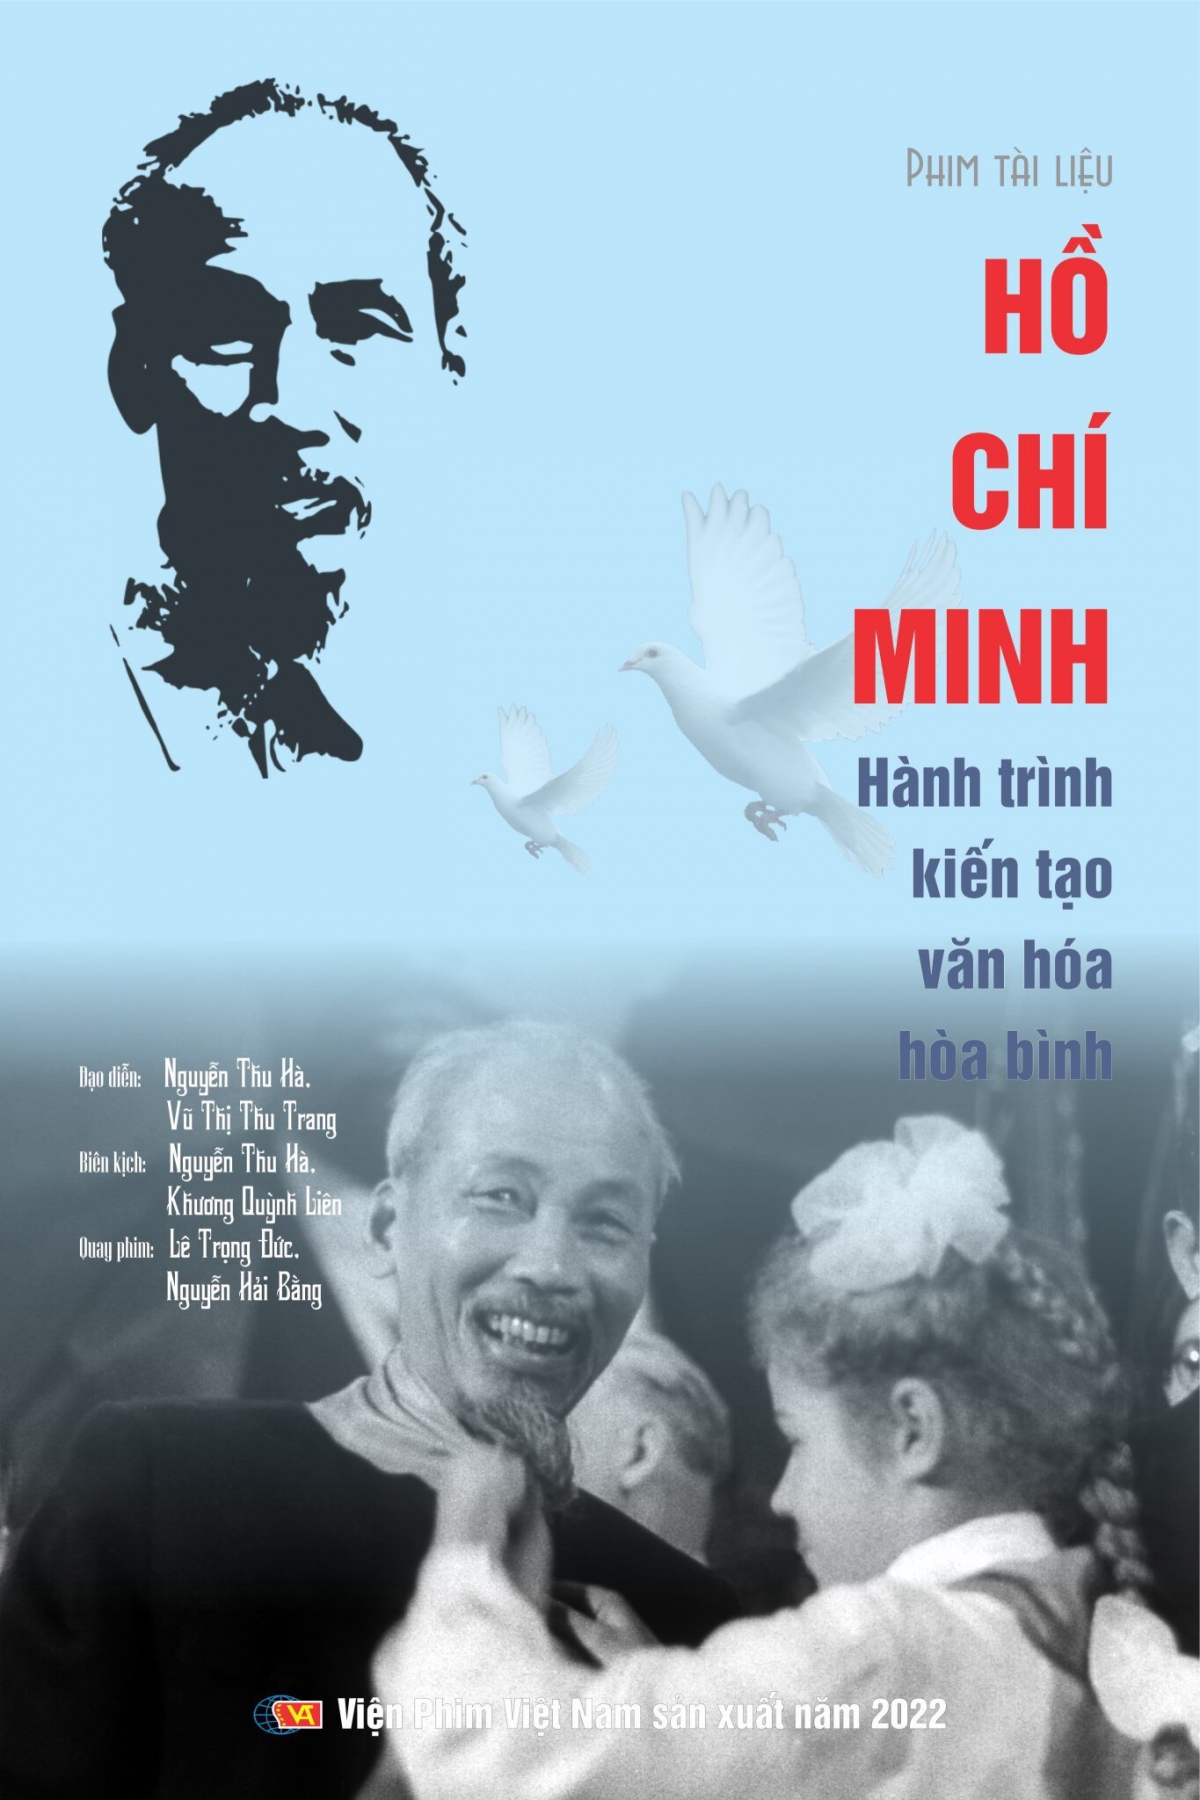 Poster film tài liệu nghệ thuật: “Hồ Chí Minh - Hành trình kiến tạo văn hóa hòa bình”